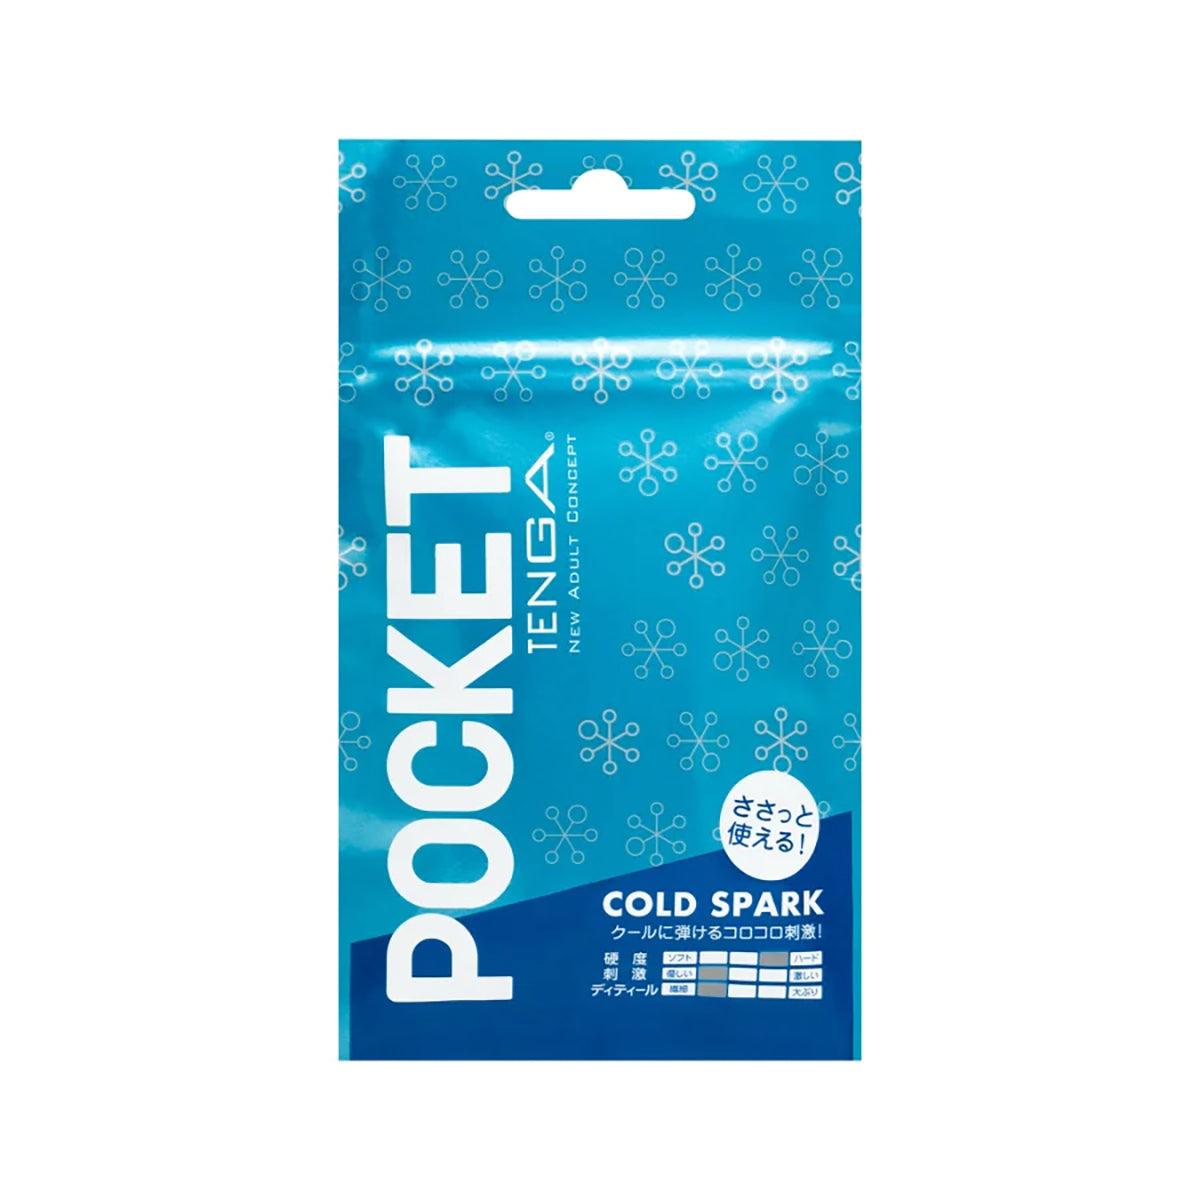 TENGA Pocket Cold Spark - shop enby